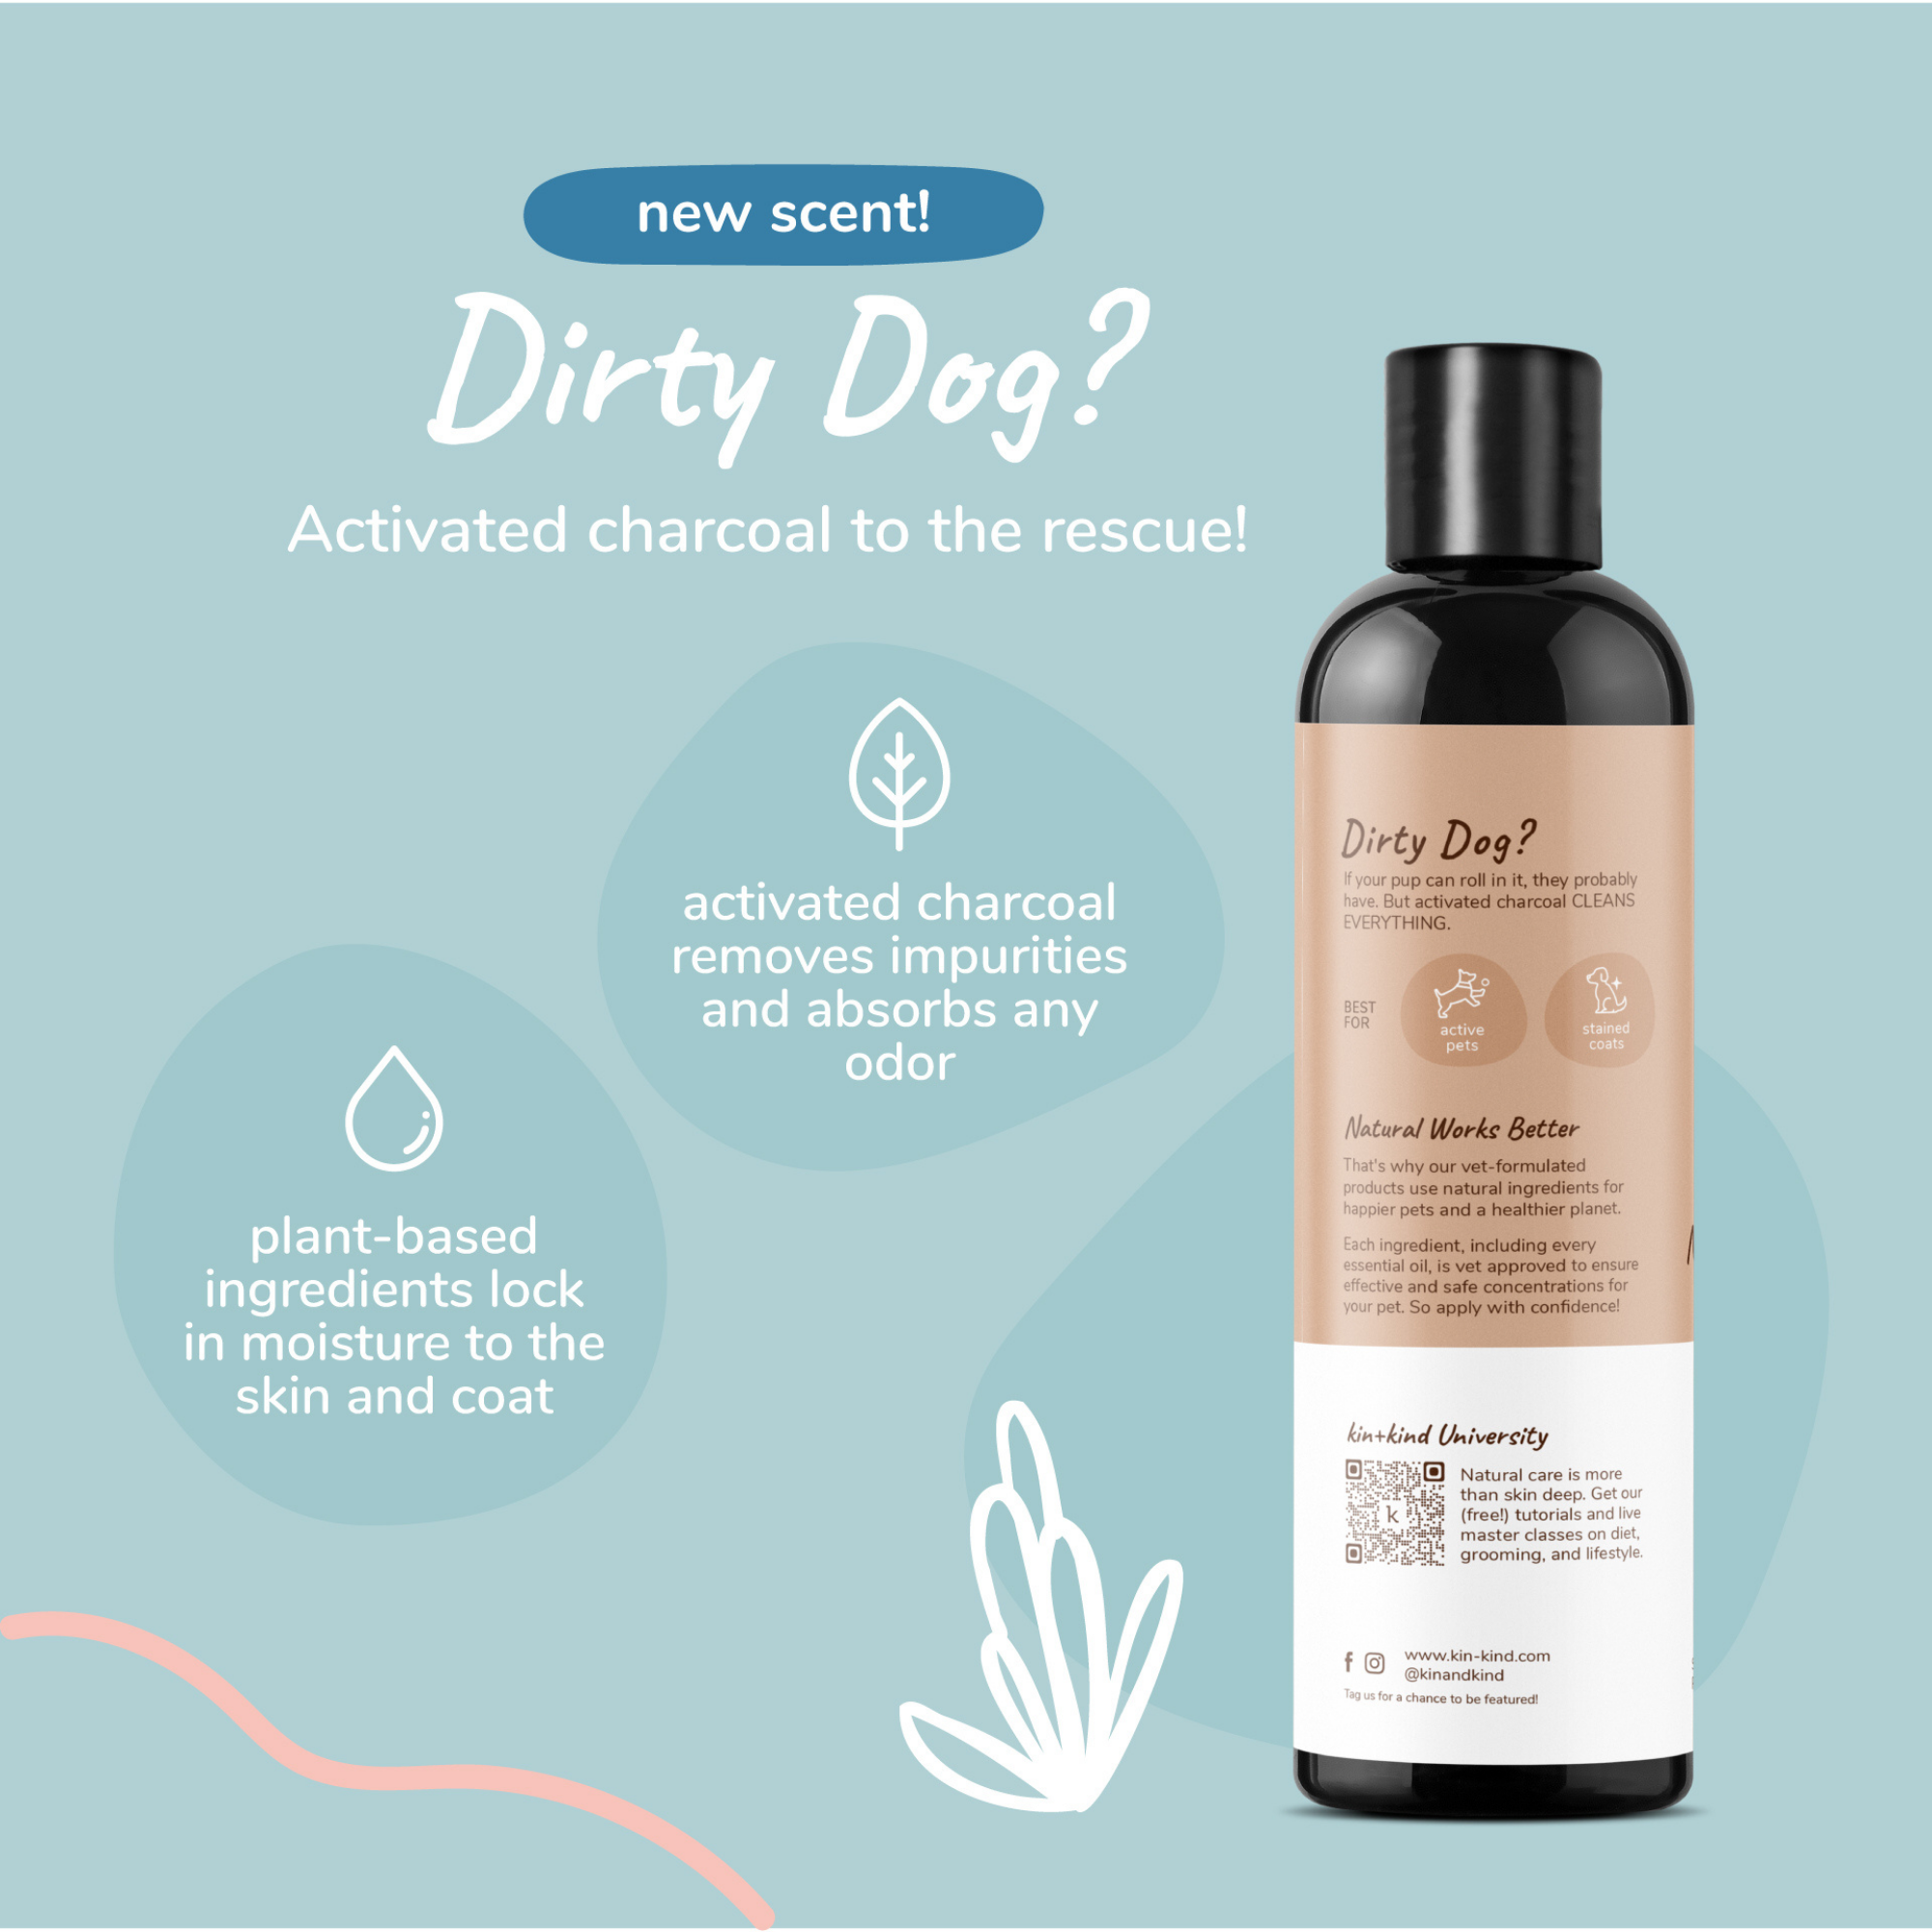 Kin + Kind Deep Clean Natural Dog Shampoo Almond & Vanilla 12 oz - Mutts & Co.